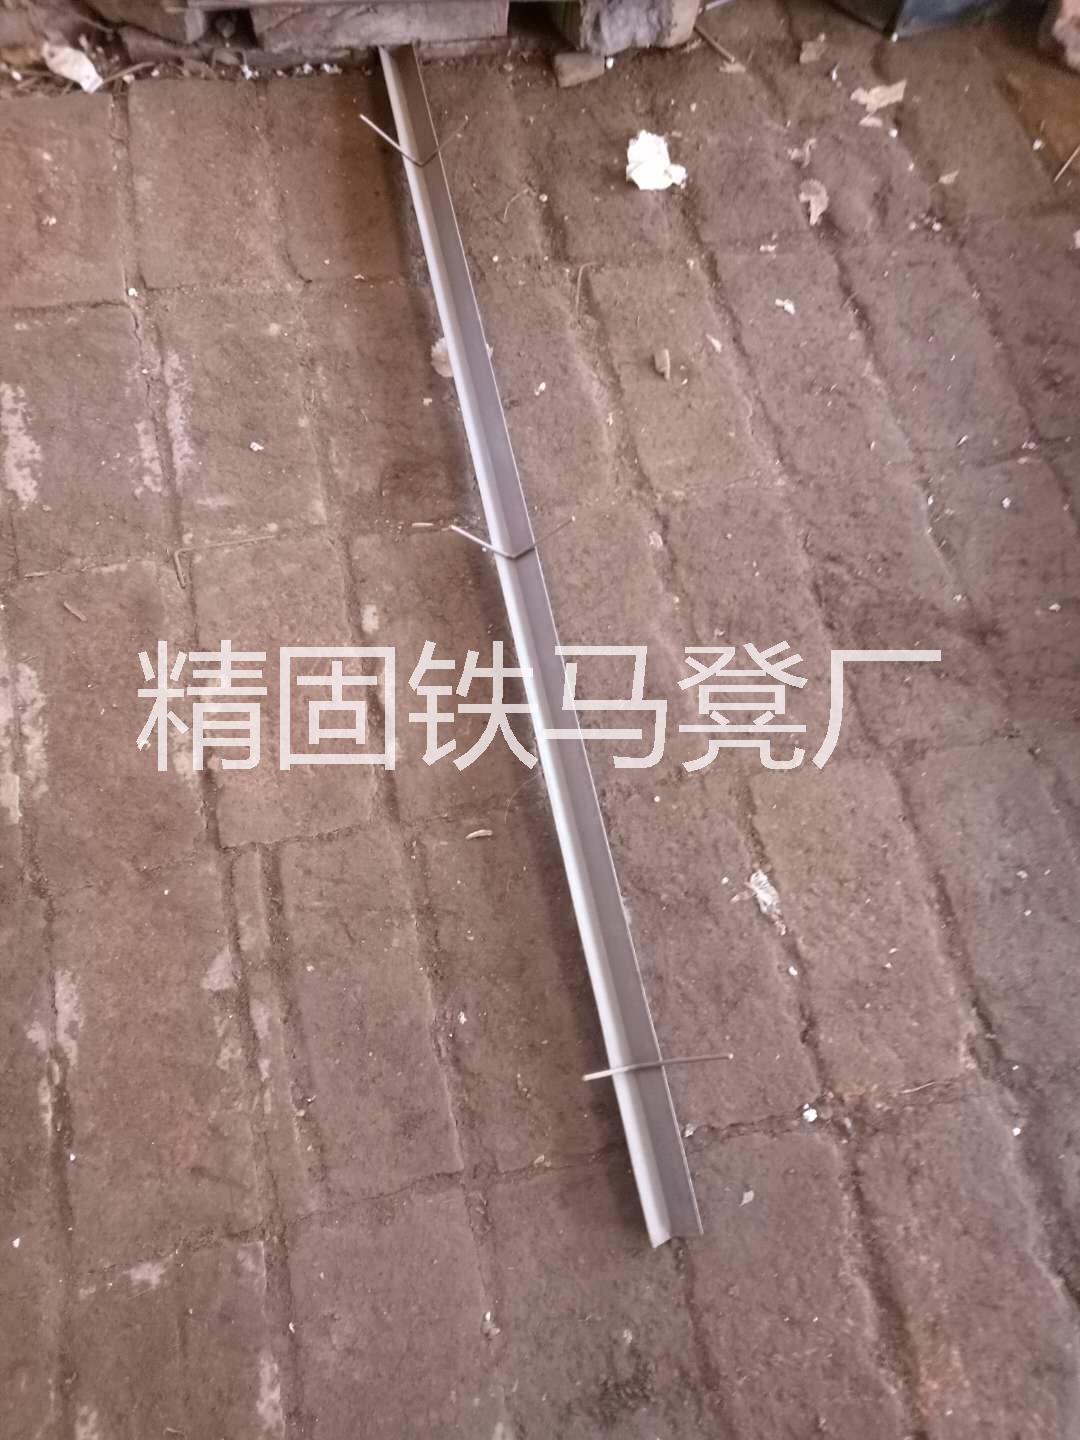 北京铁马凳 北京楼梯护角 北京环保建筑建材  北京铁马凳批发 铁马凳 环保建材 铁马凳批发图片